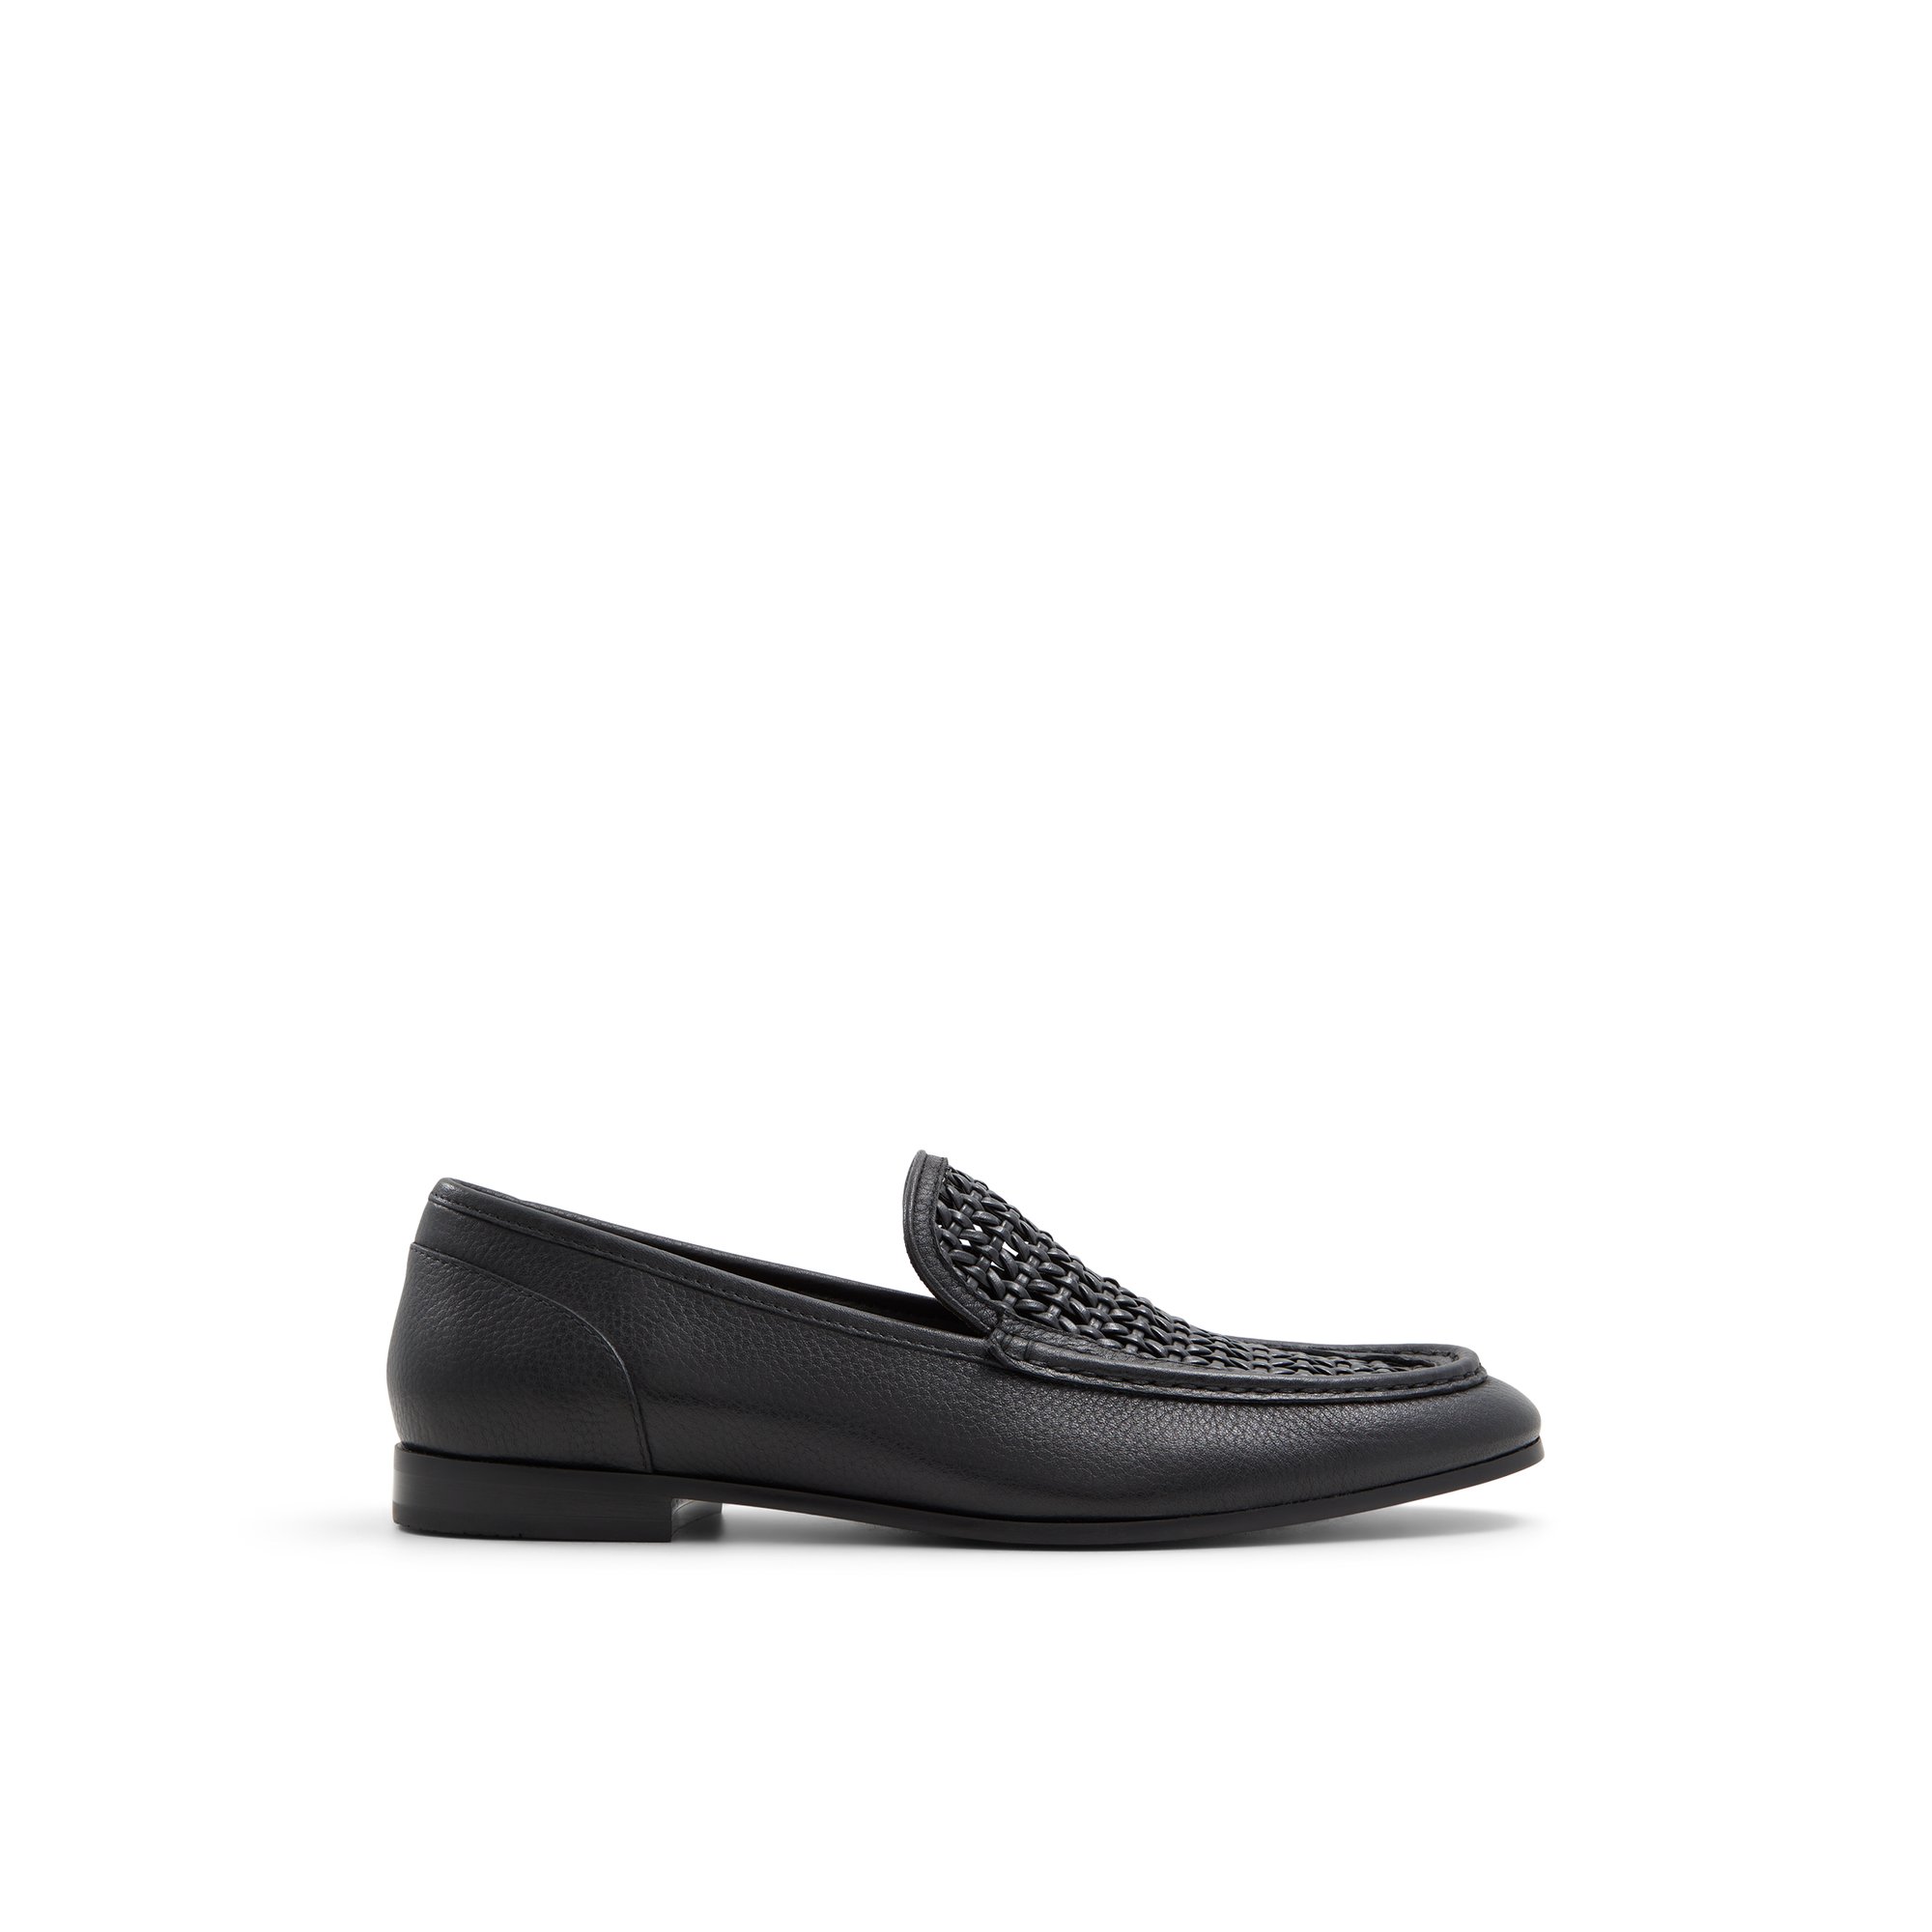 ALDO Porttland - Men's Loafers and Slip Ons - Black